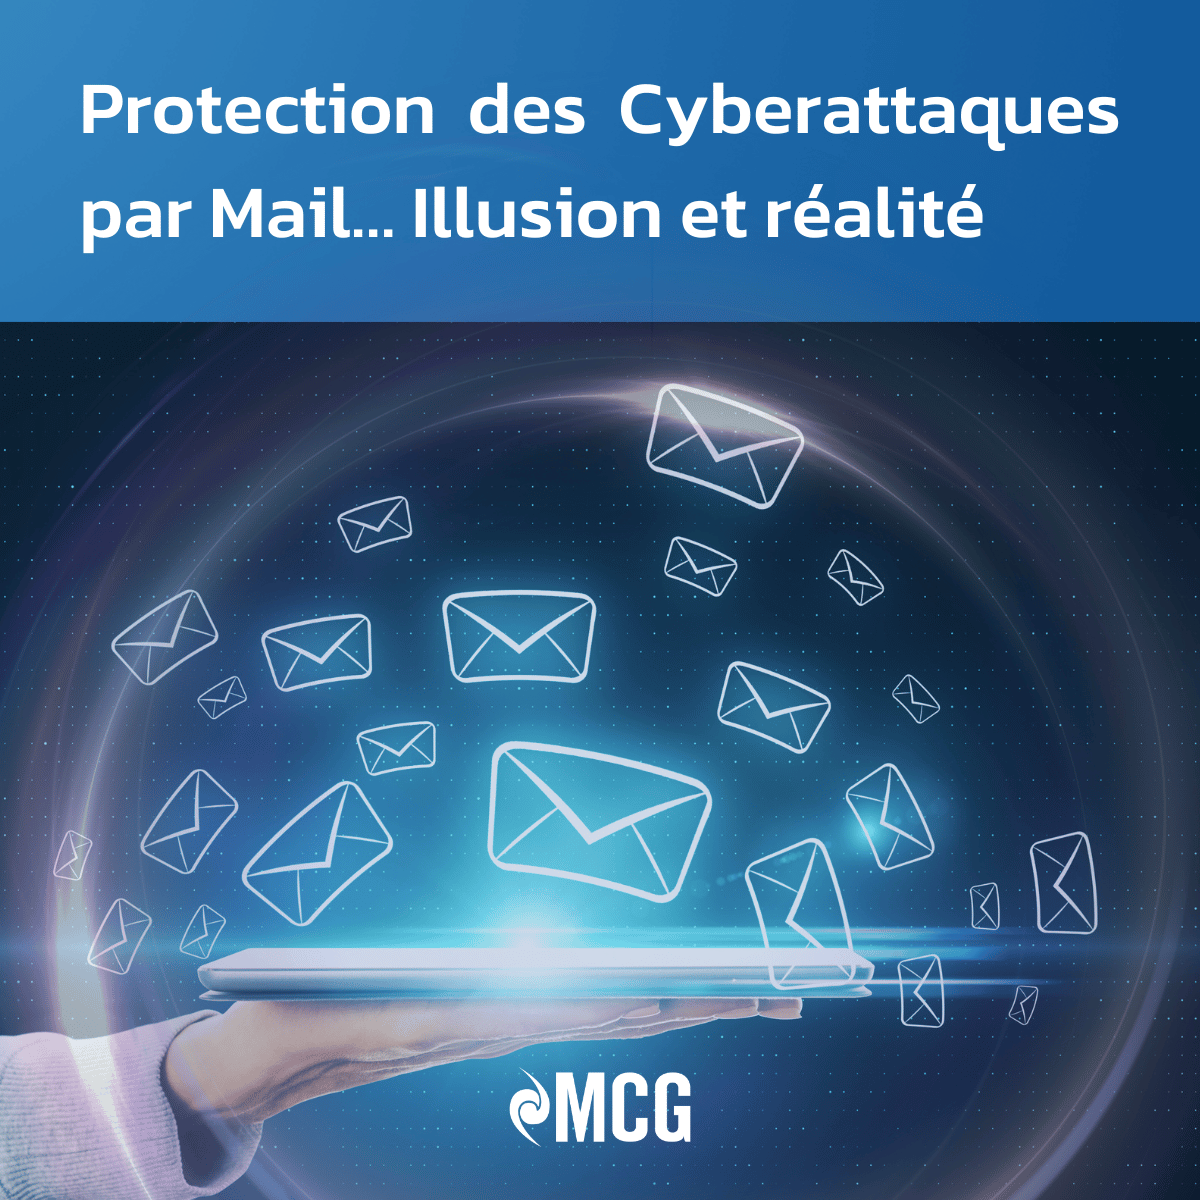 Protection des Cyber-attaques par Mail… illusion et réalité